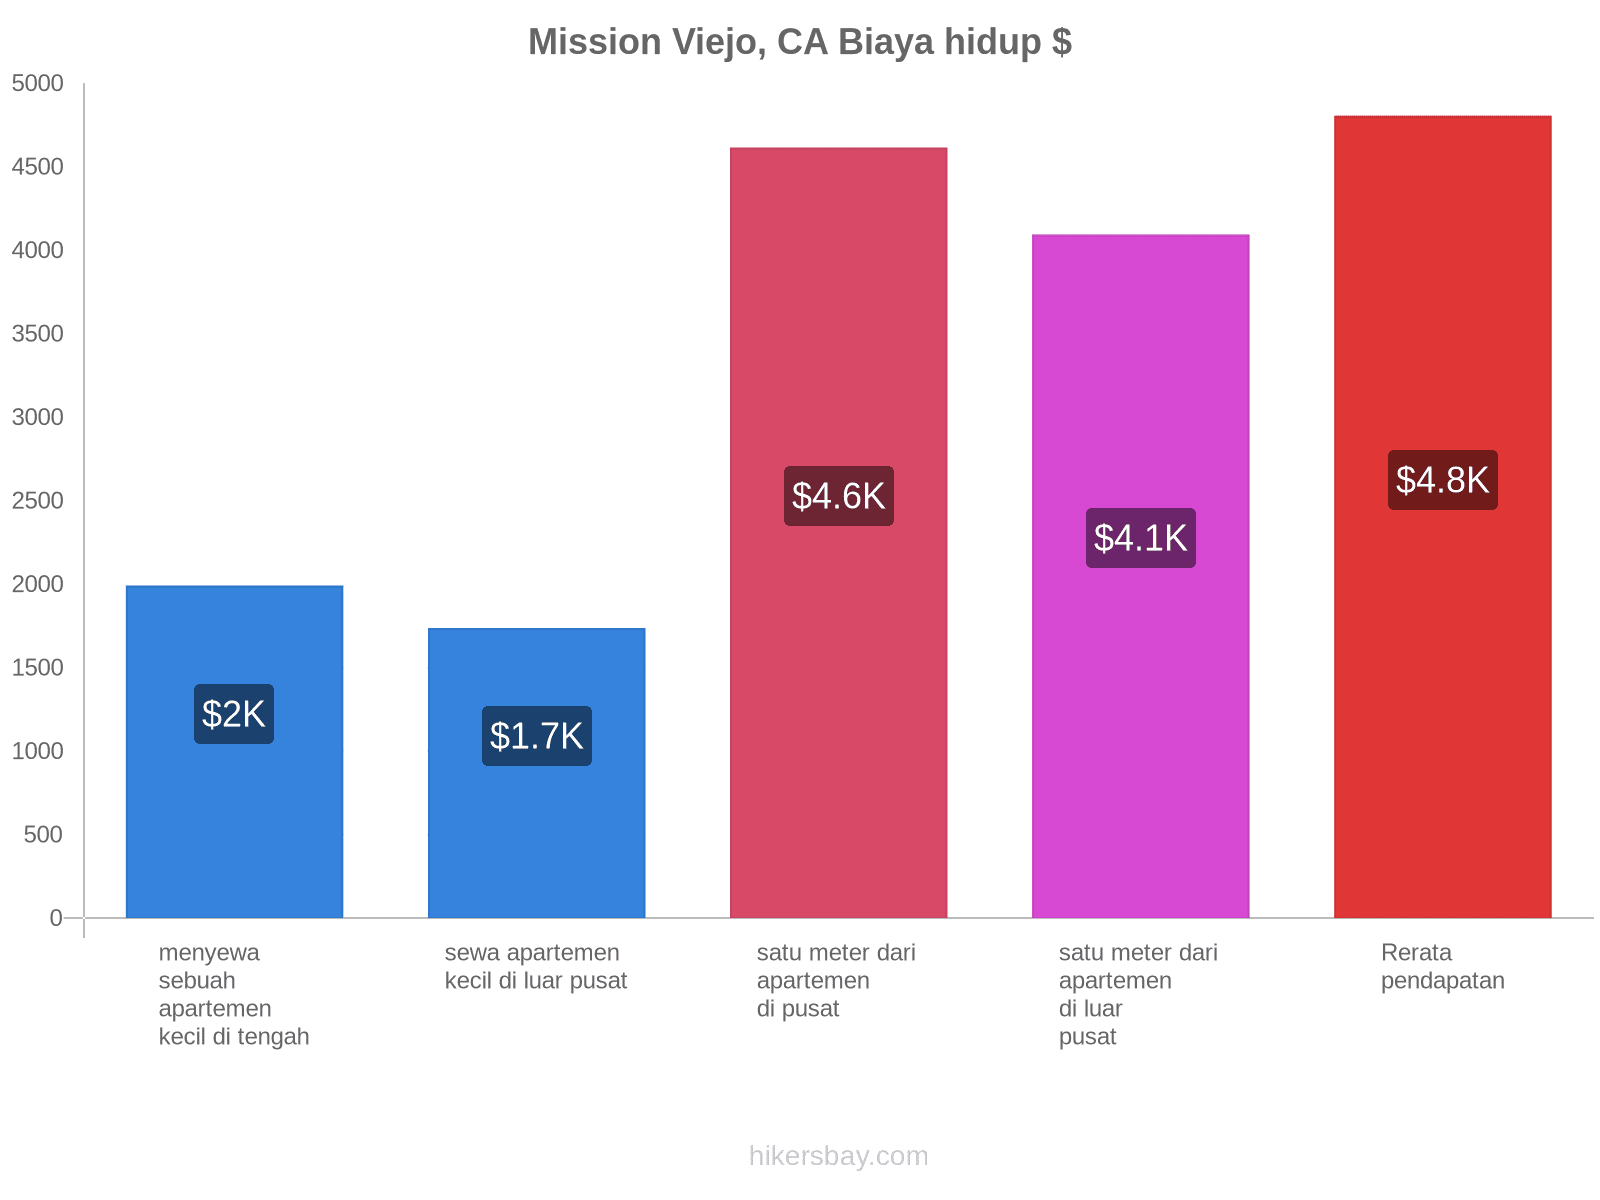 Mission Viejo, CA biaya hidup hikersbay.com